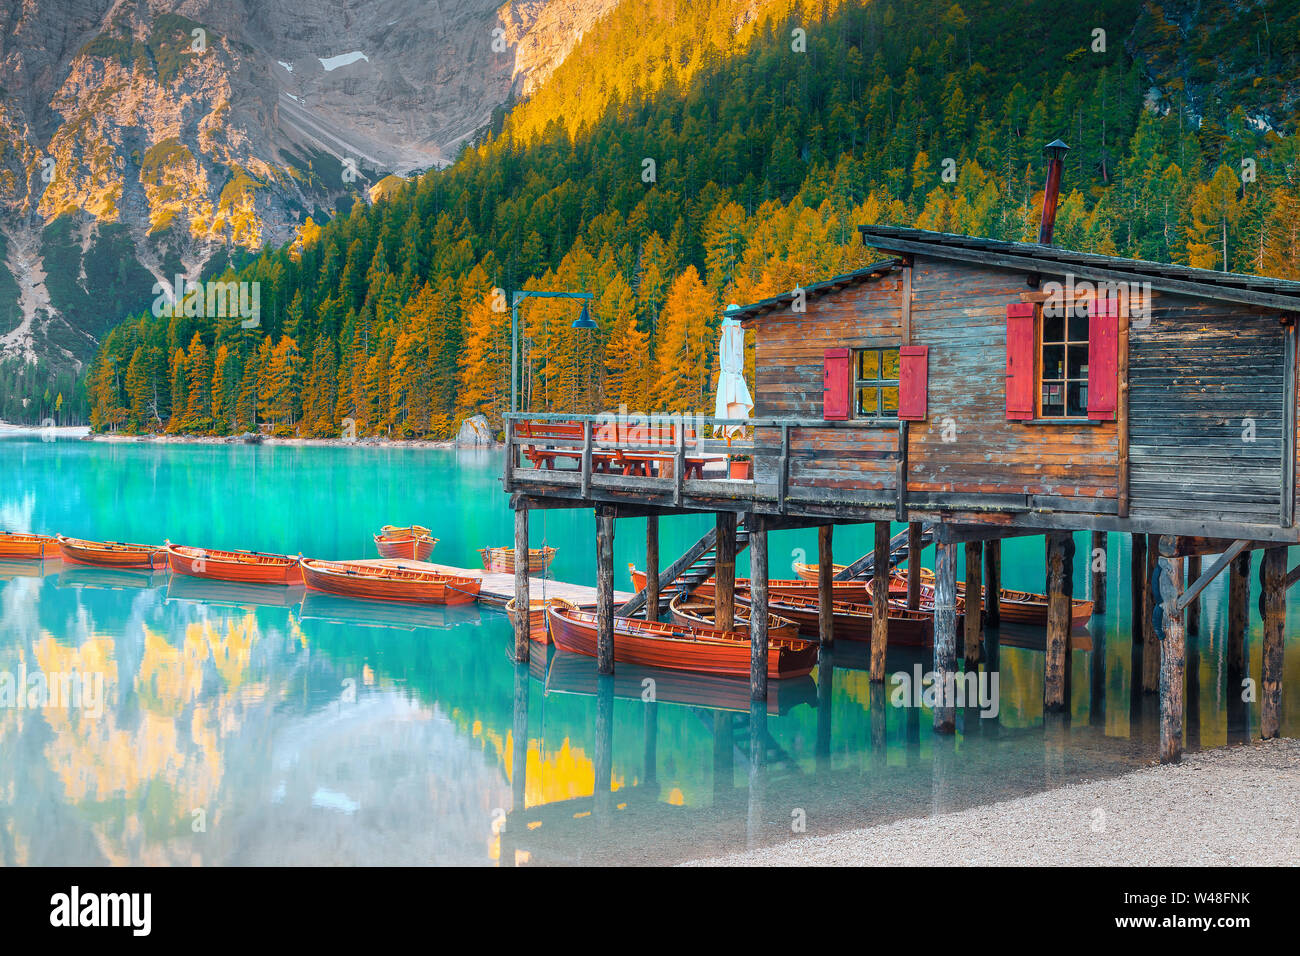 Malerischen alpinen See und schönen Herbst Landschaft mit gelben Lärchen. Beliebte touristische Destination mit Booten aus Holz und niedlichen Holz- Bootshaus, Stockfoto